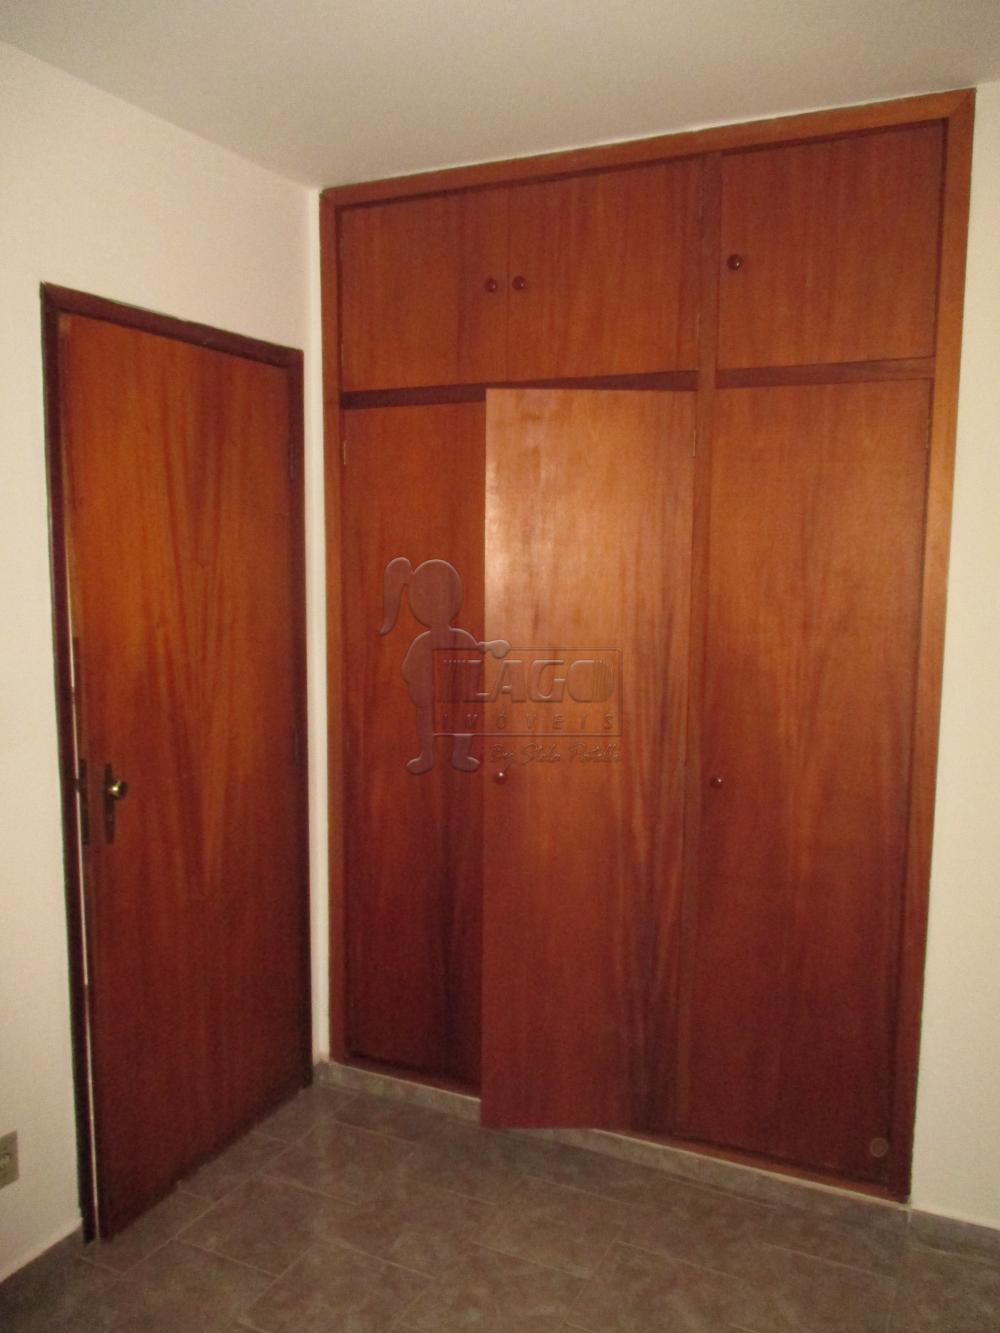 Alugar Apartamentos / Padrão em Ribeirão Preto R$ 750,00 - Foto 7